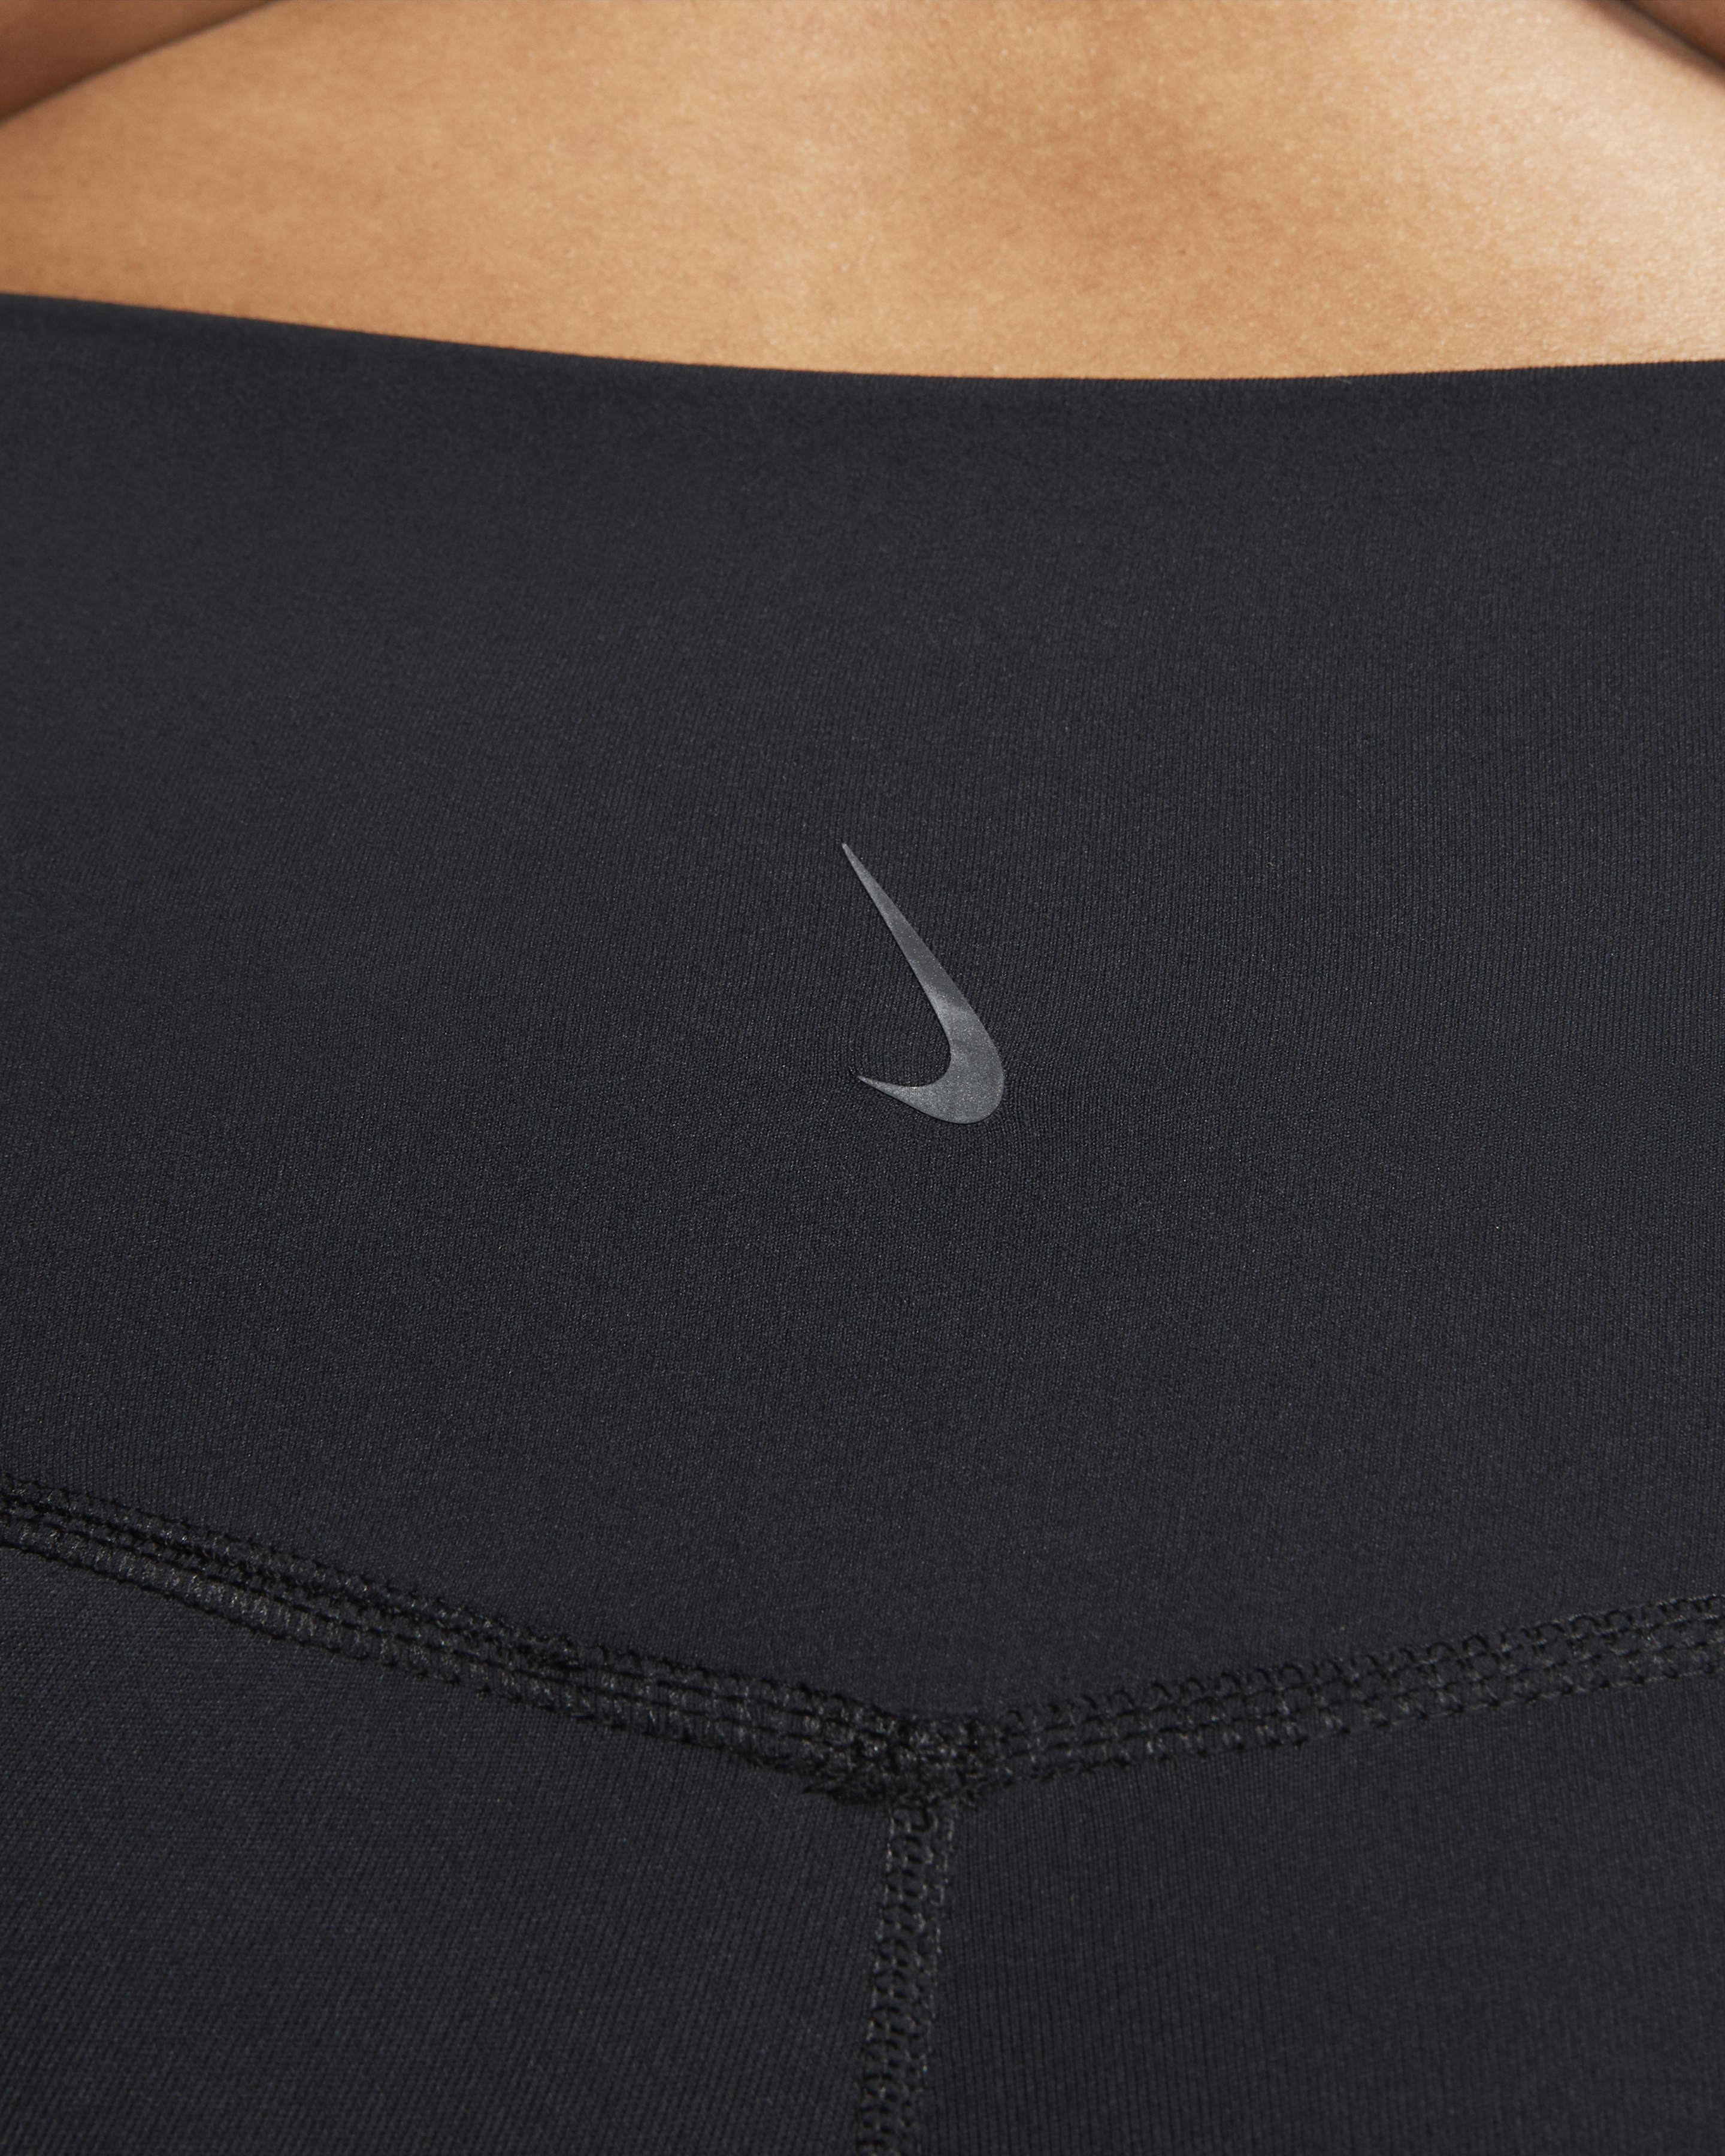 Nike Plus Size Power Legend Cropped Leggings - Macy's